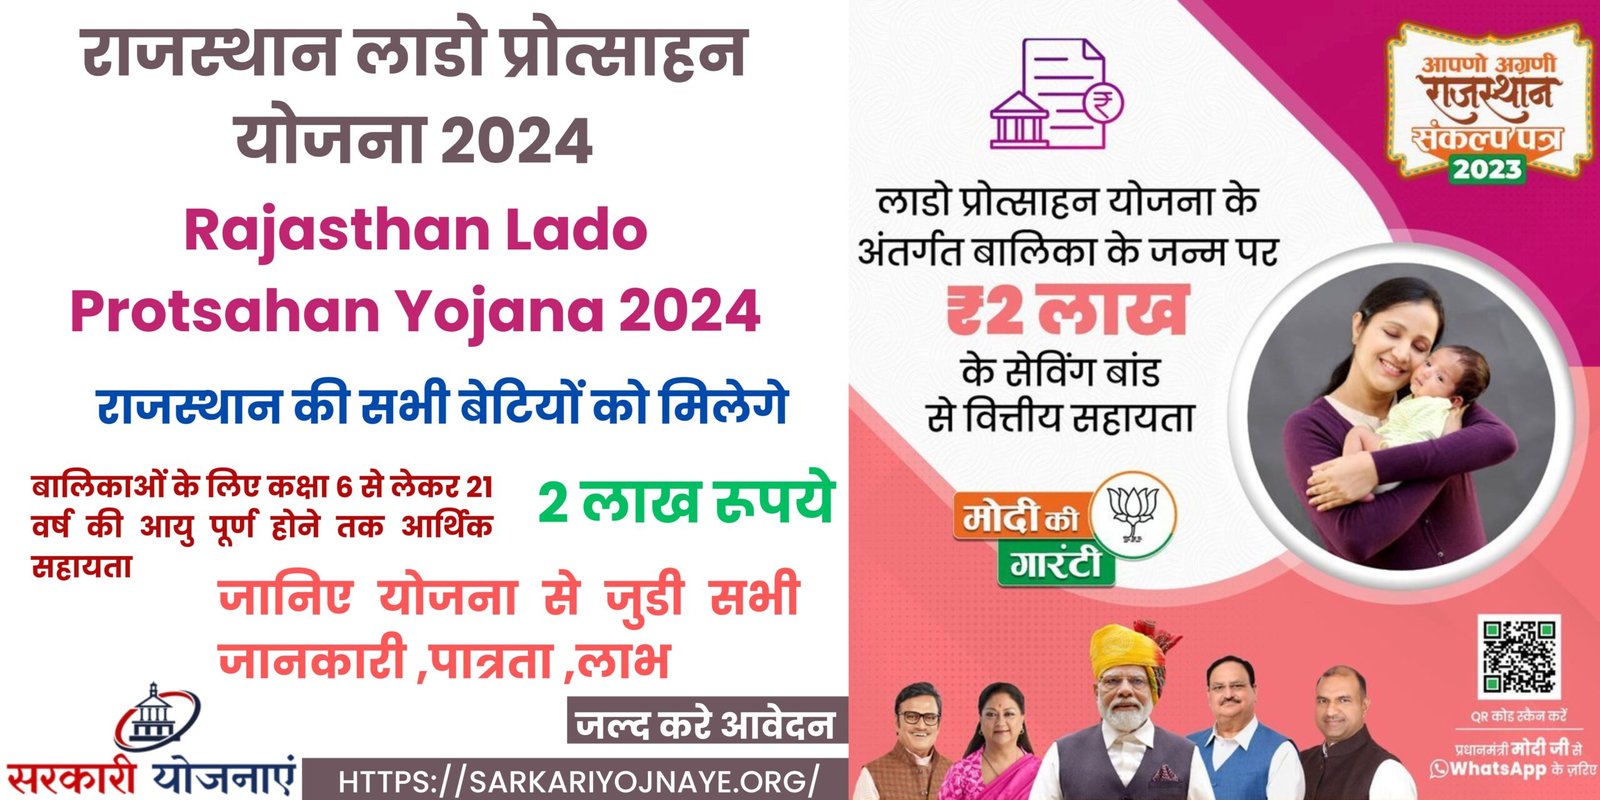 Rajasthan Lado Protsahan Yojana 2024